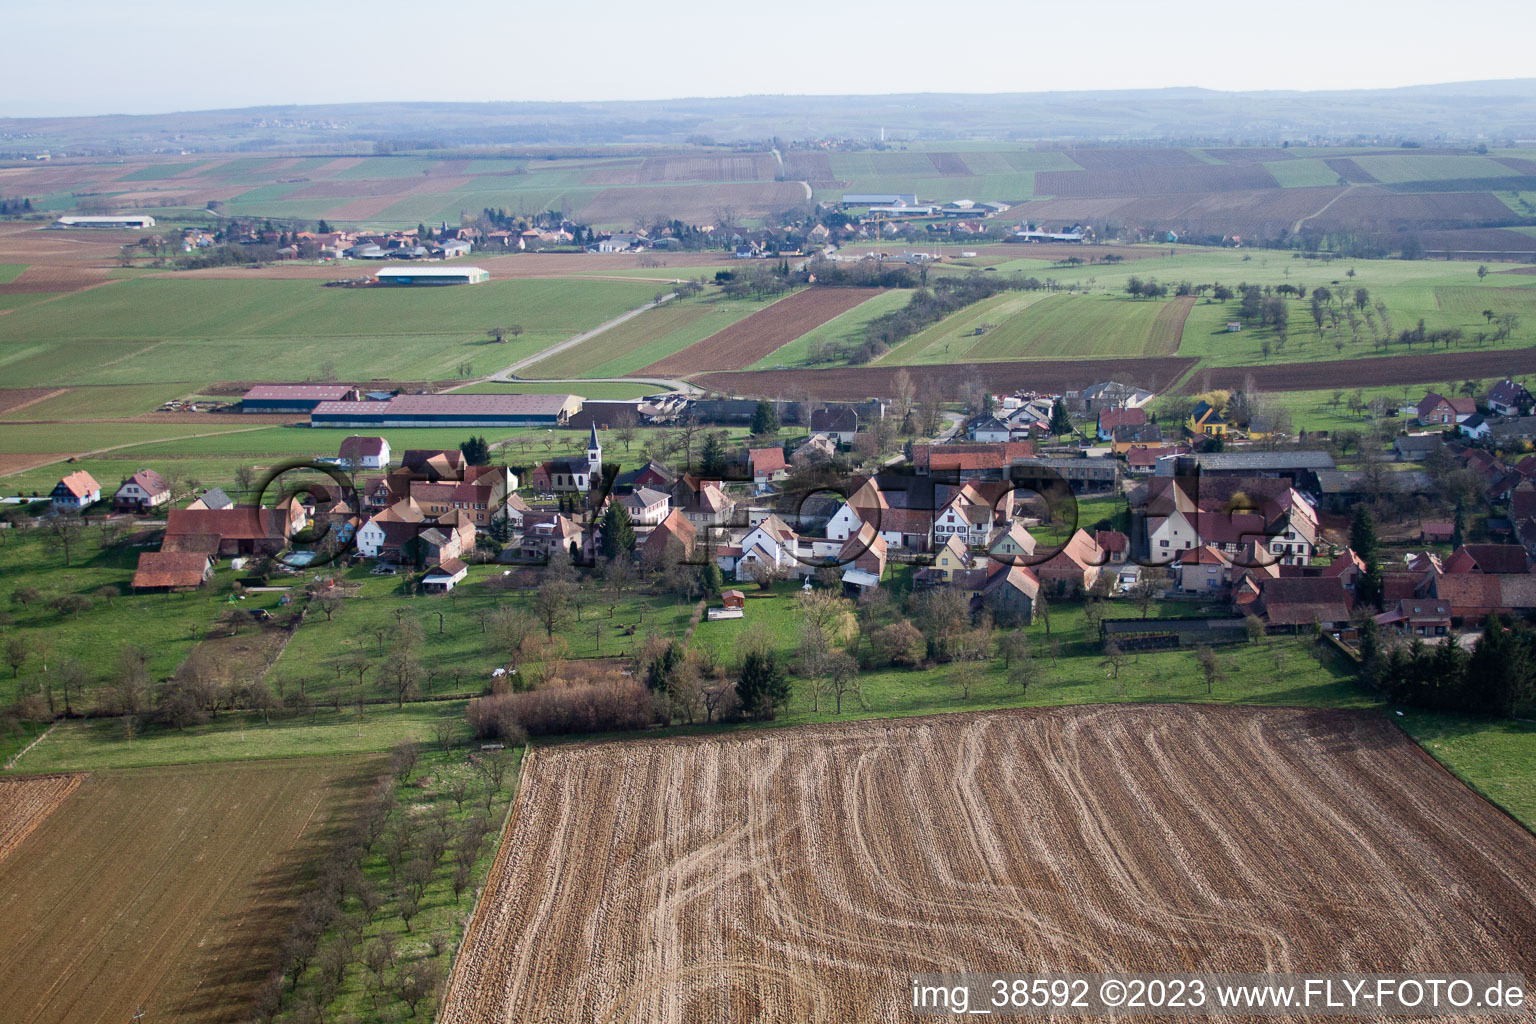 Zœbersdorf dans le département Bas Rhin, France hors des airs